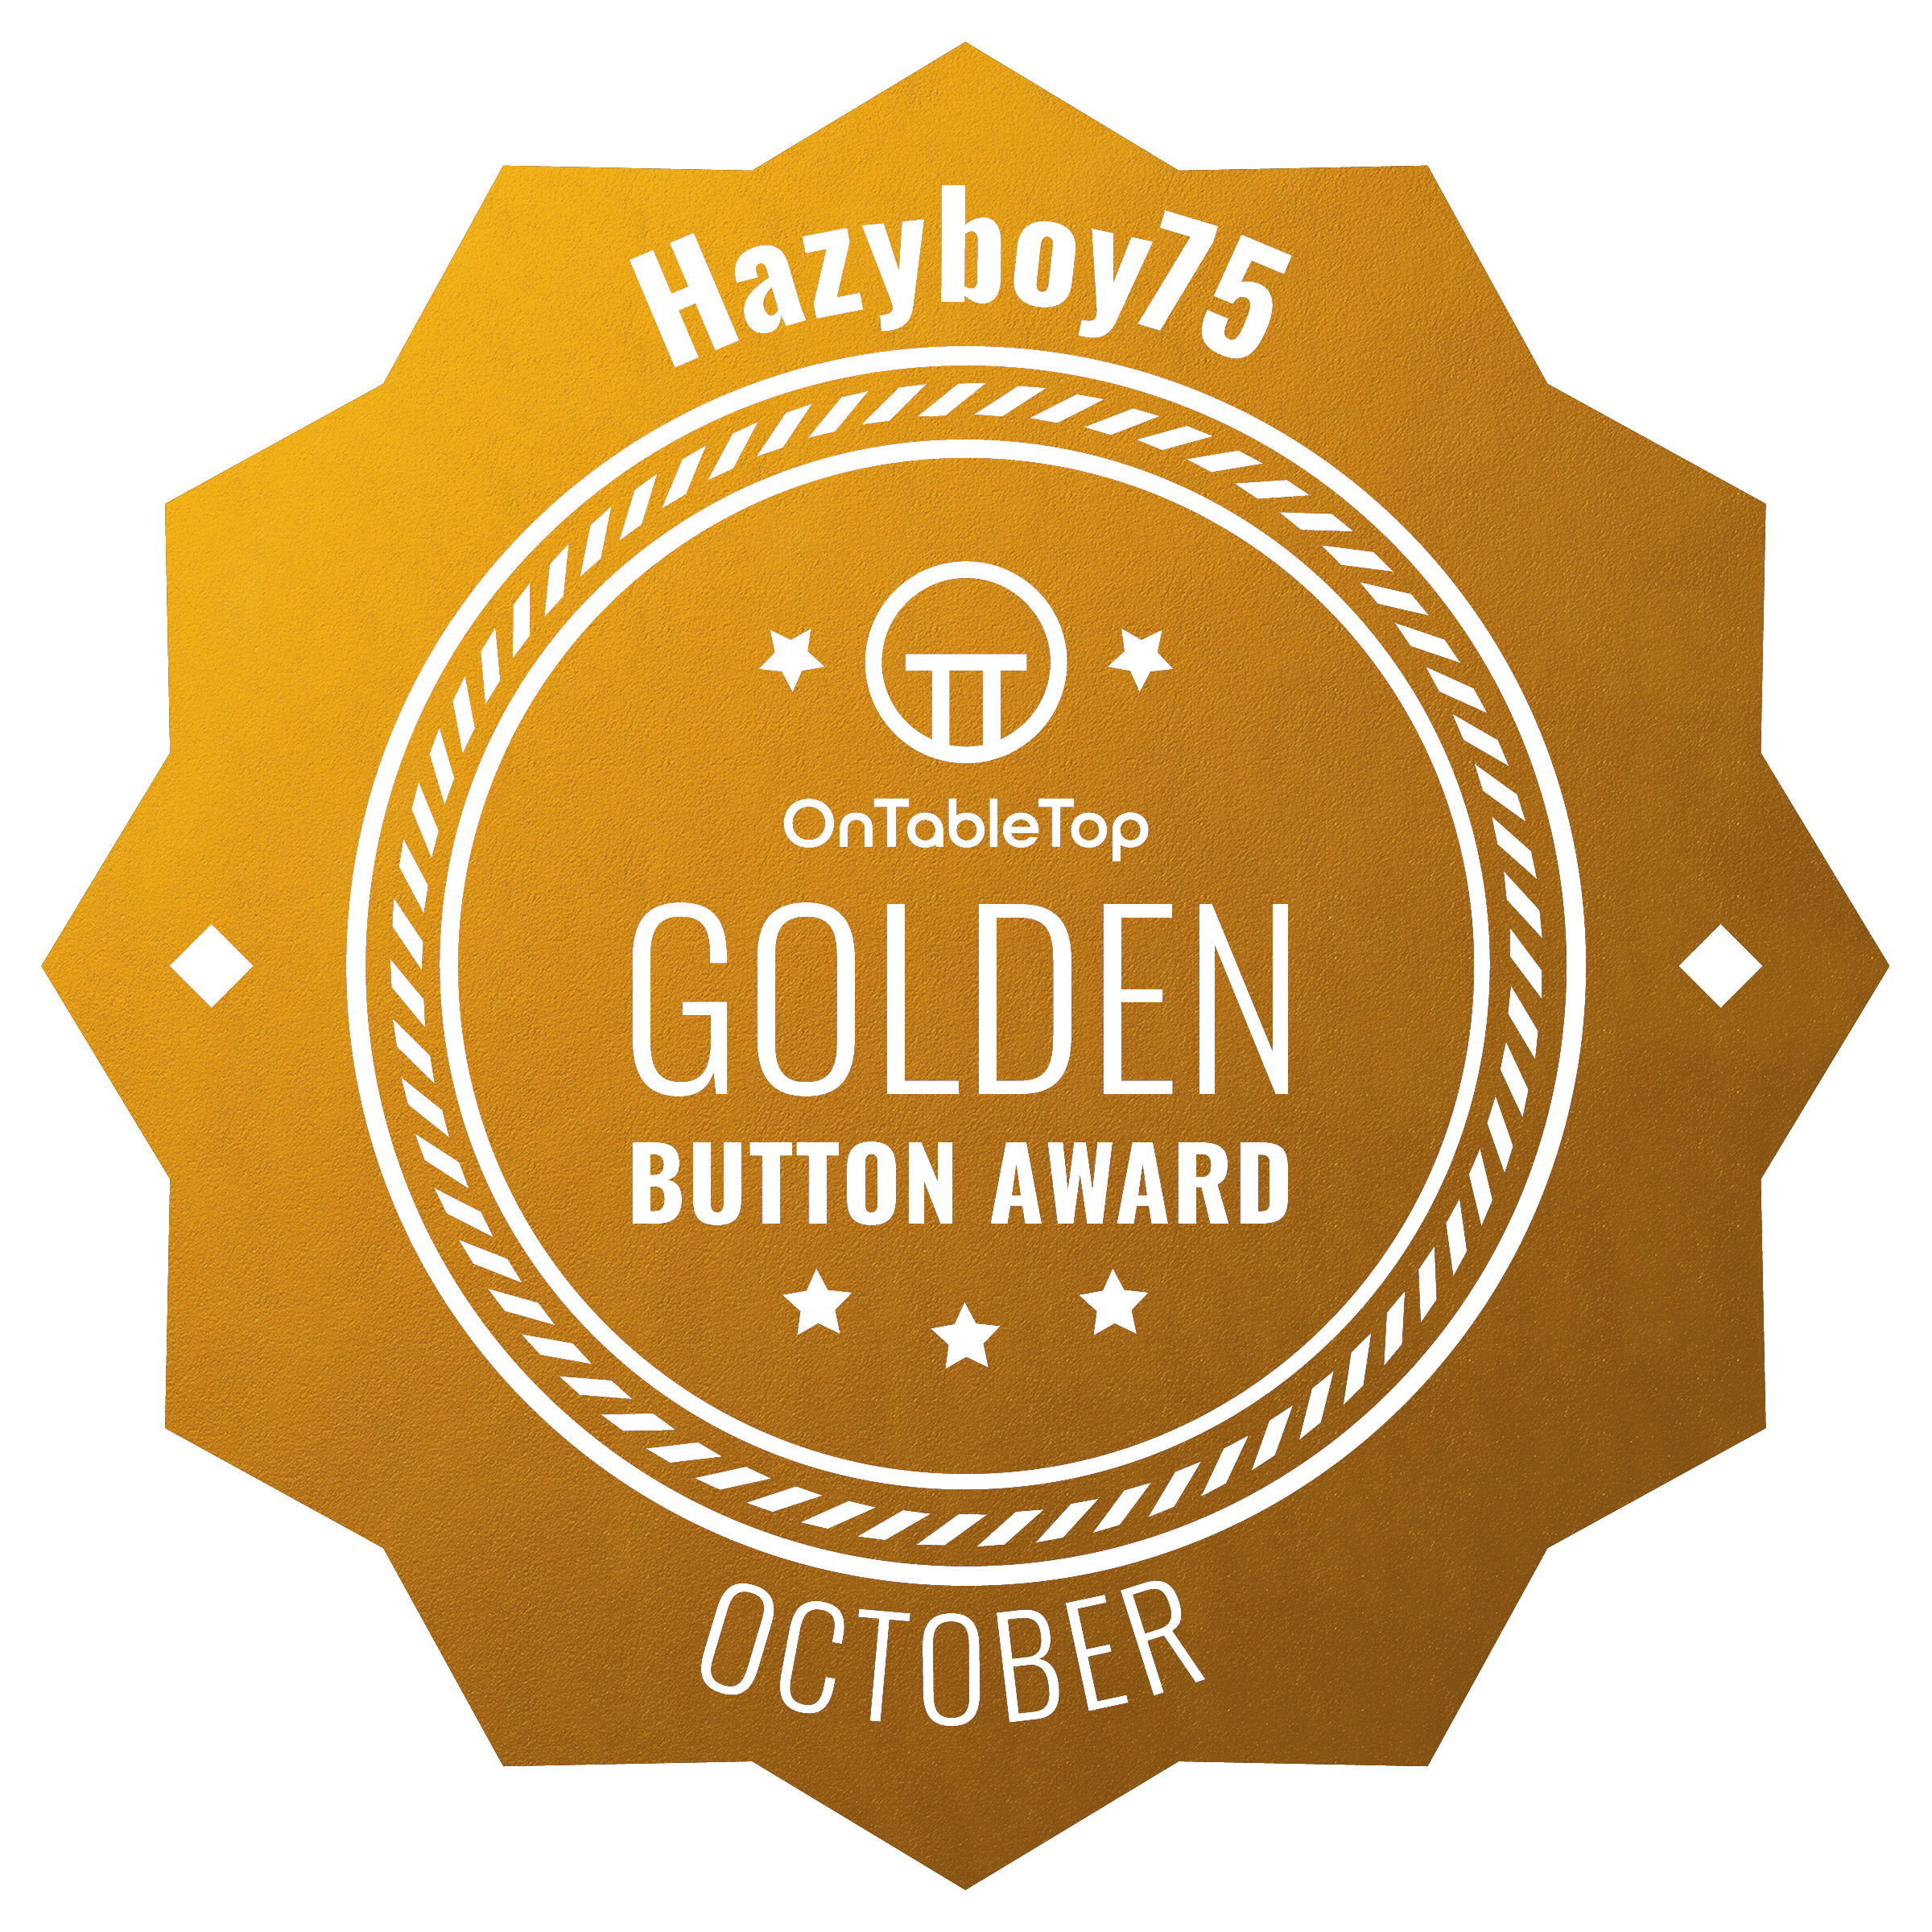 hazyboy75-Badge